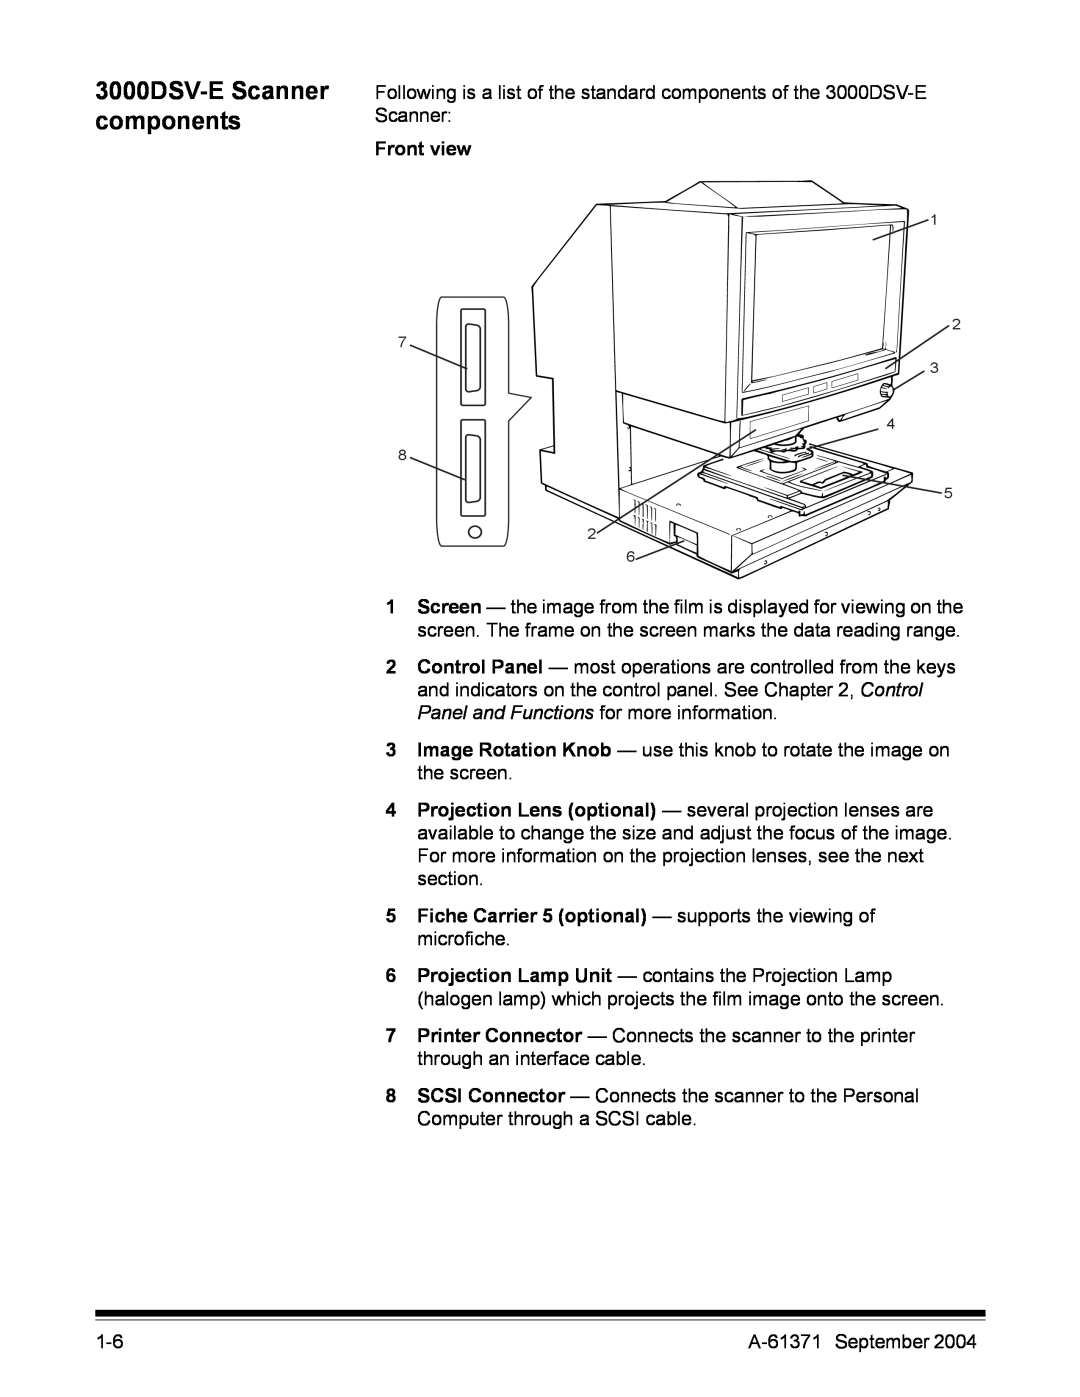 Kodak manual 3000DSV-E Scanner components, Front view 